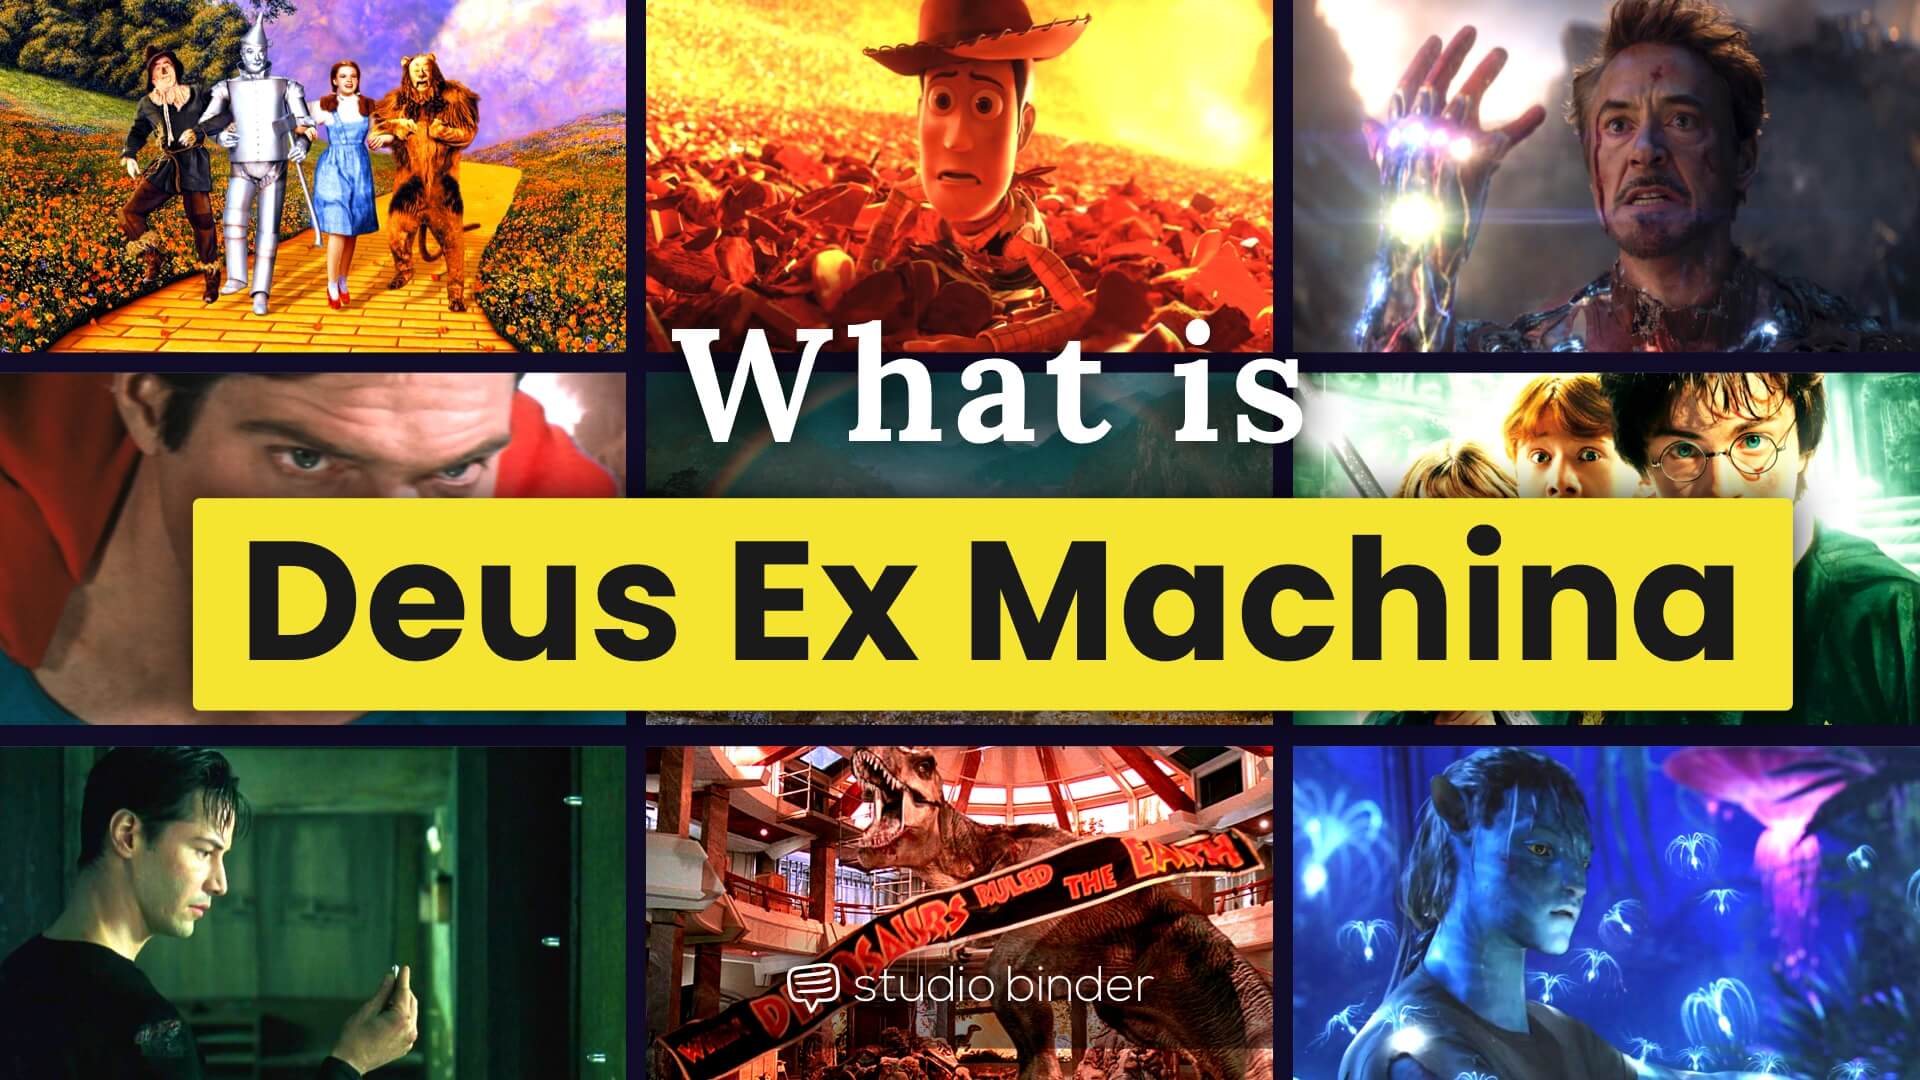 deus ex machina meaning